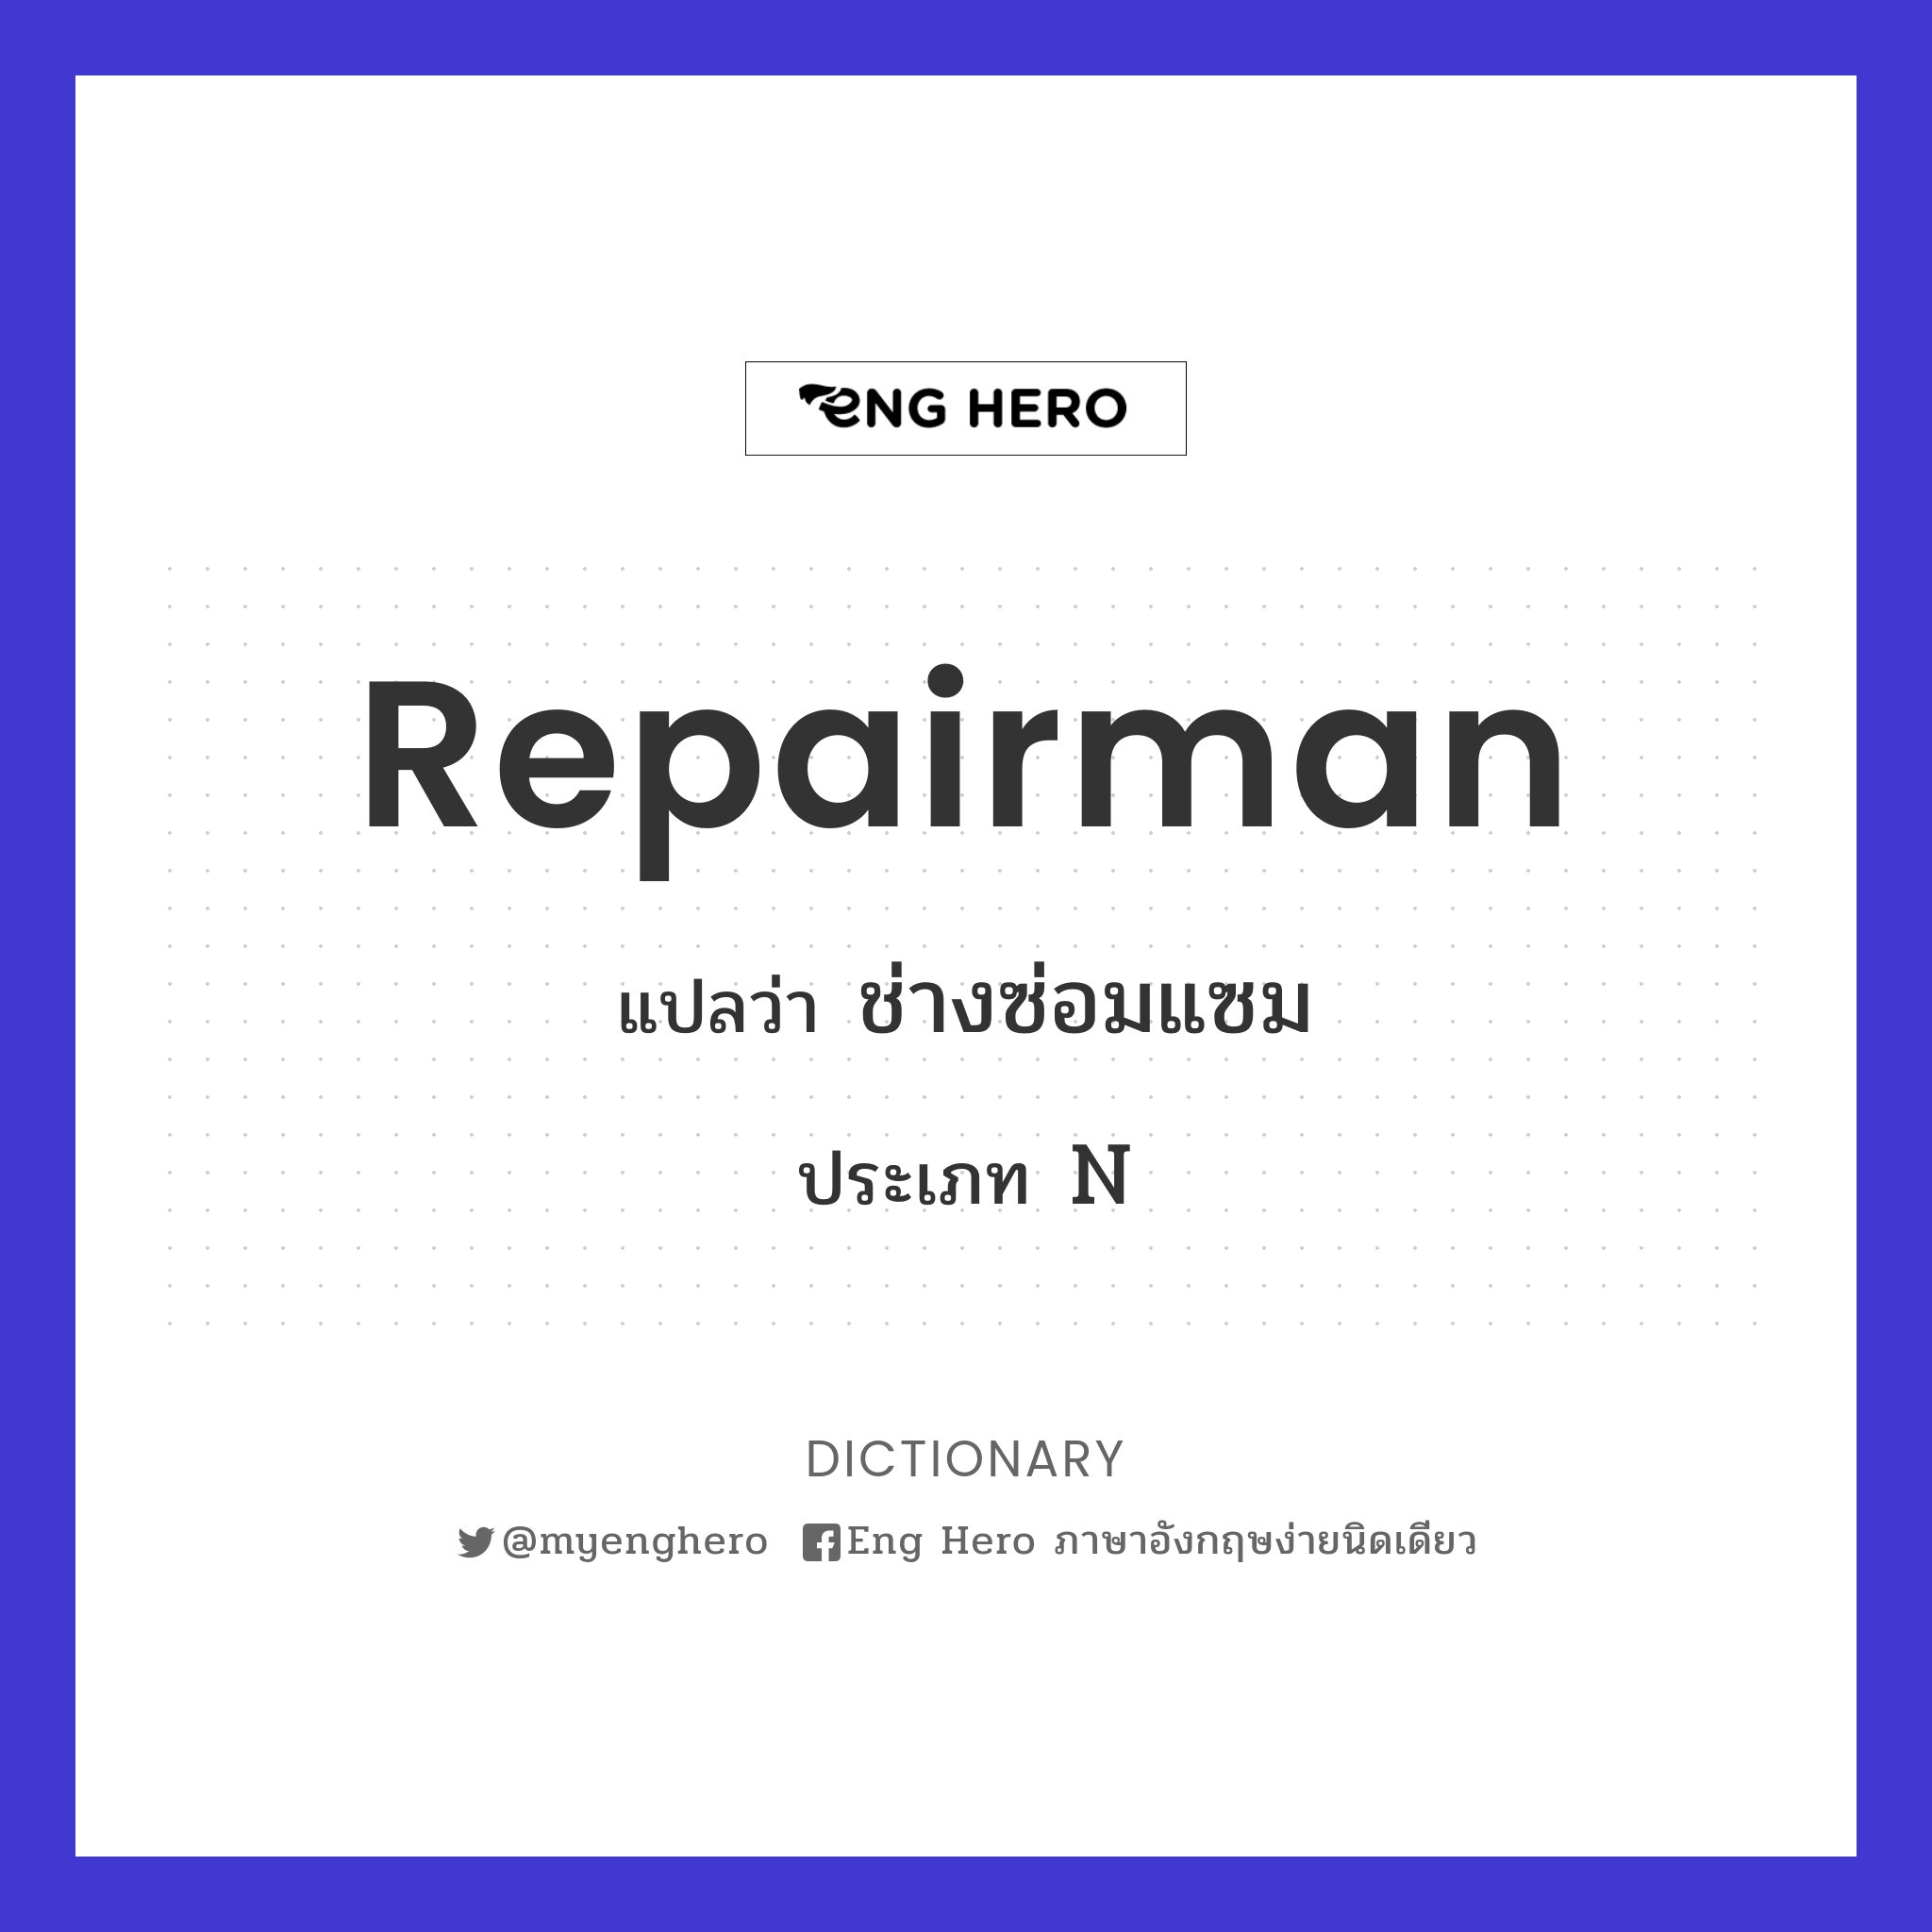 repairman